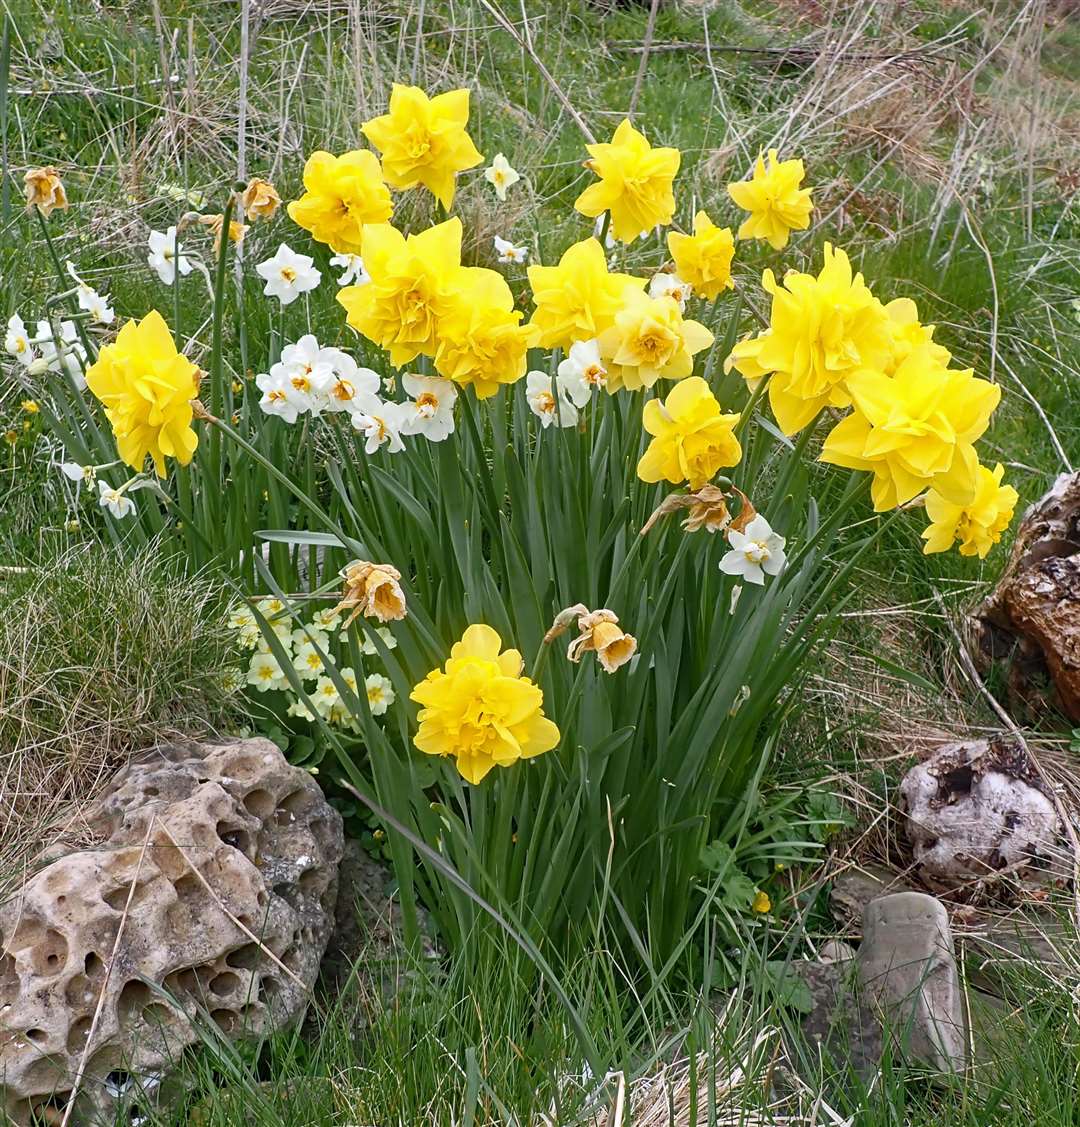 Memorial daffodils near Latheron.